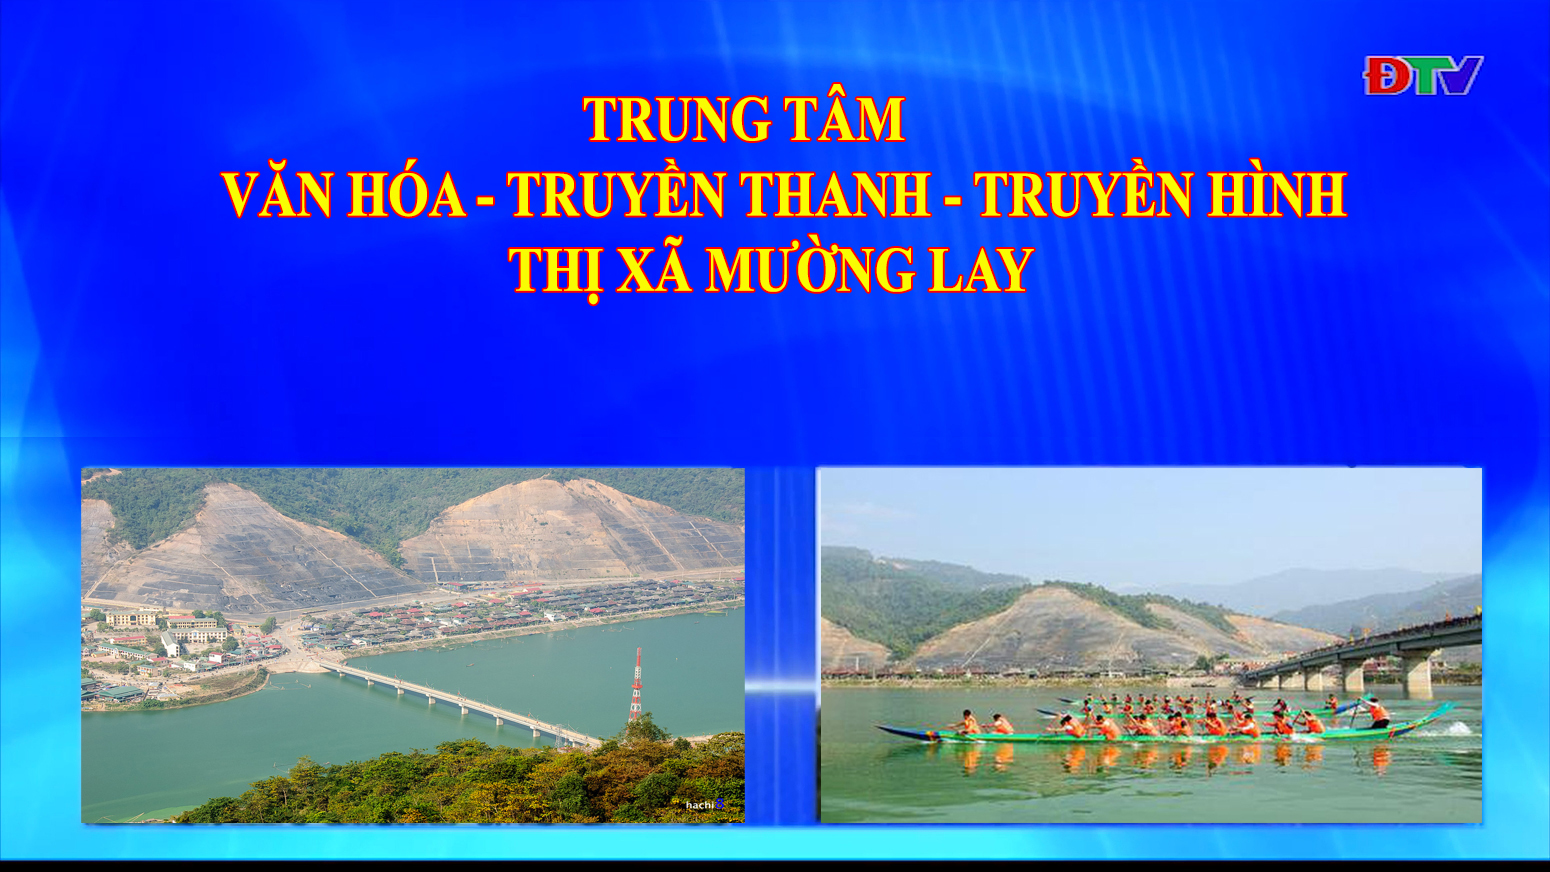 Trung tâm VH-TTTH thị xã Mường Lay (Ngày 30-10-2020)